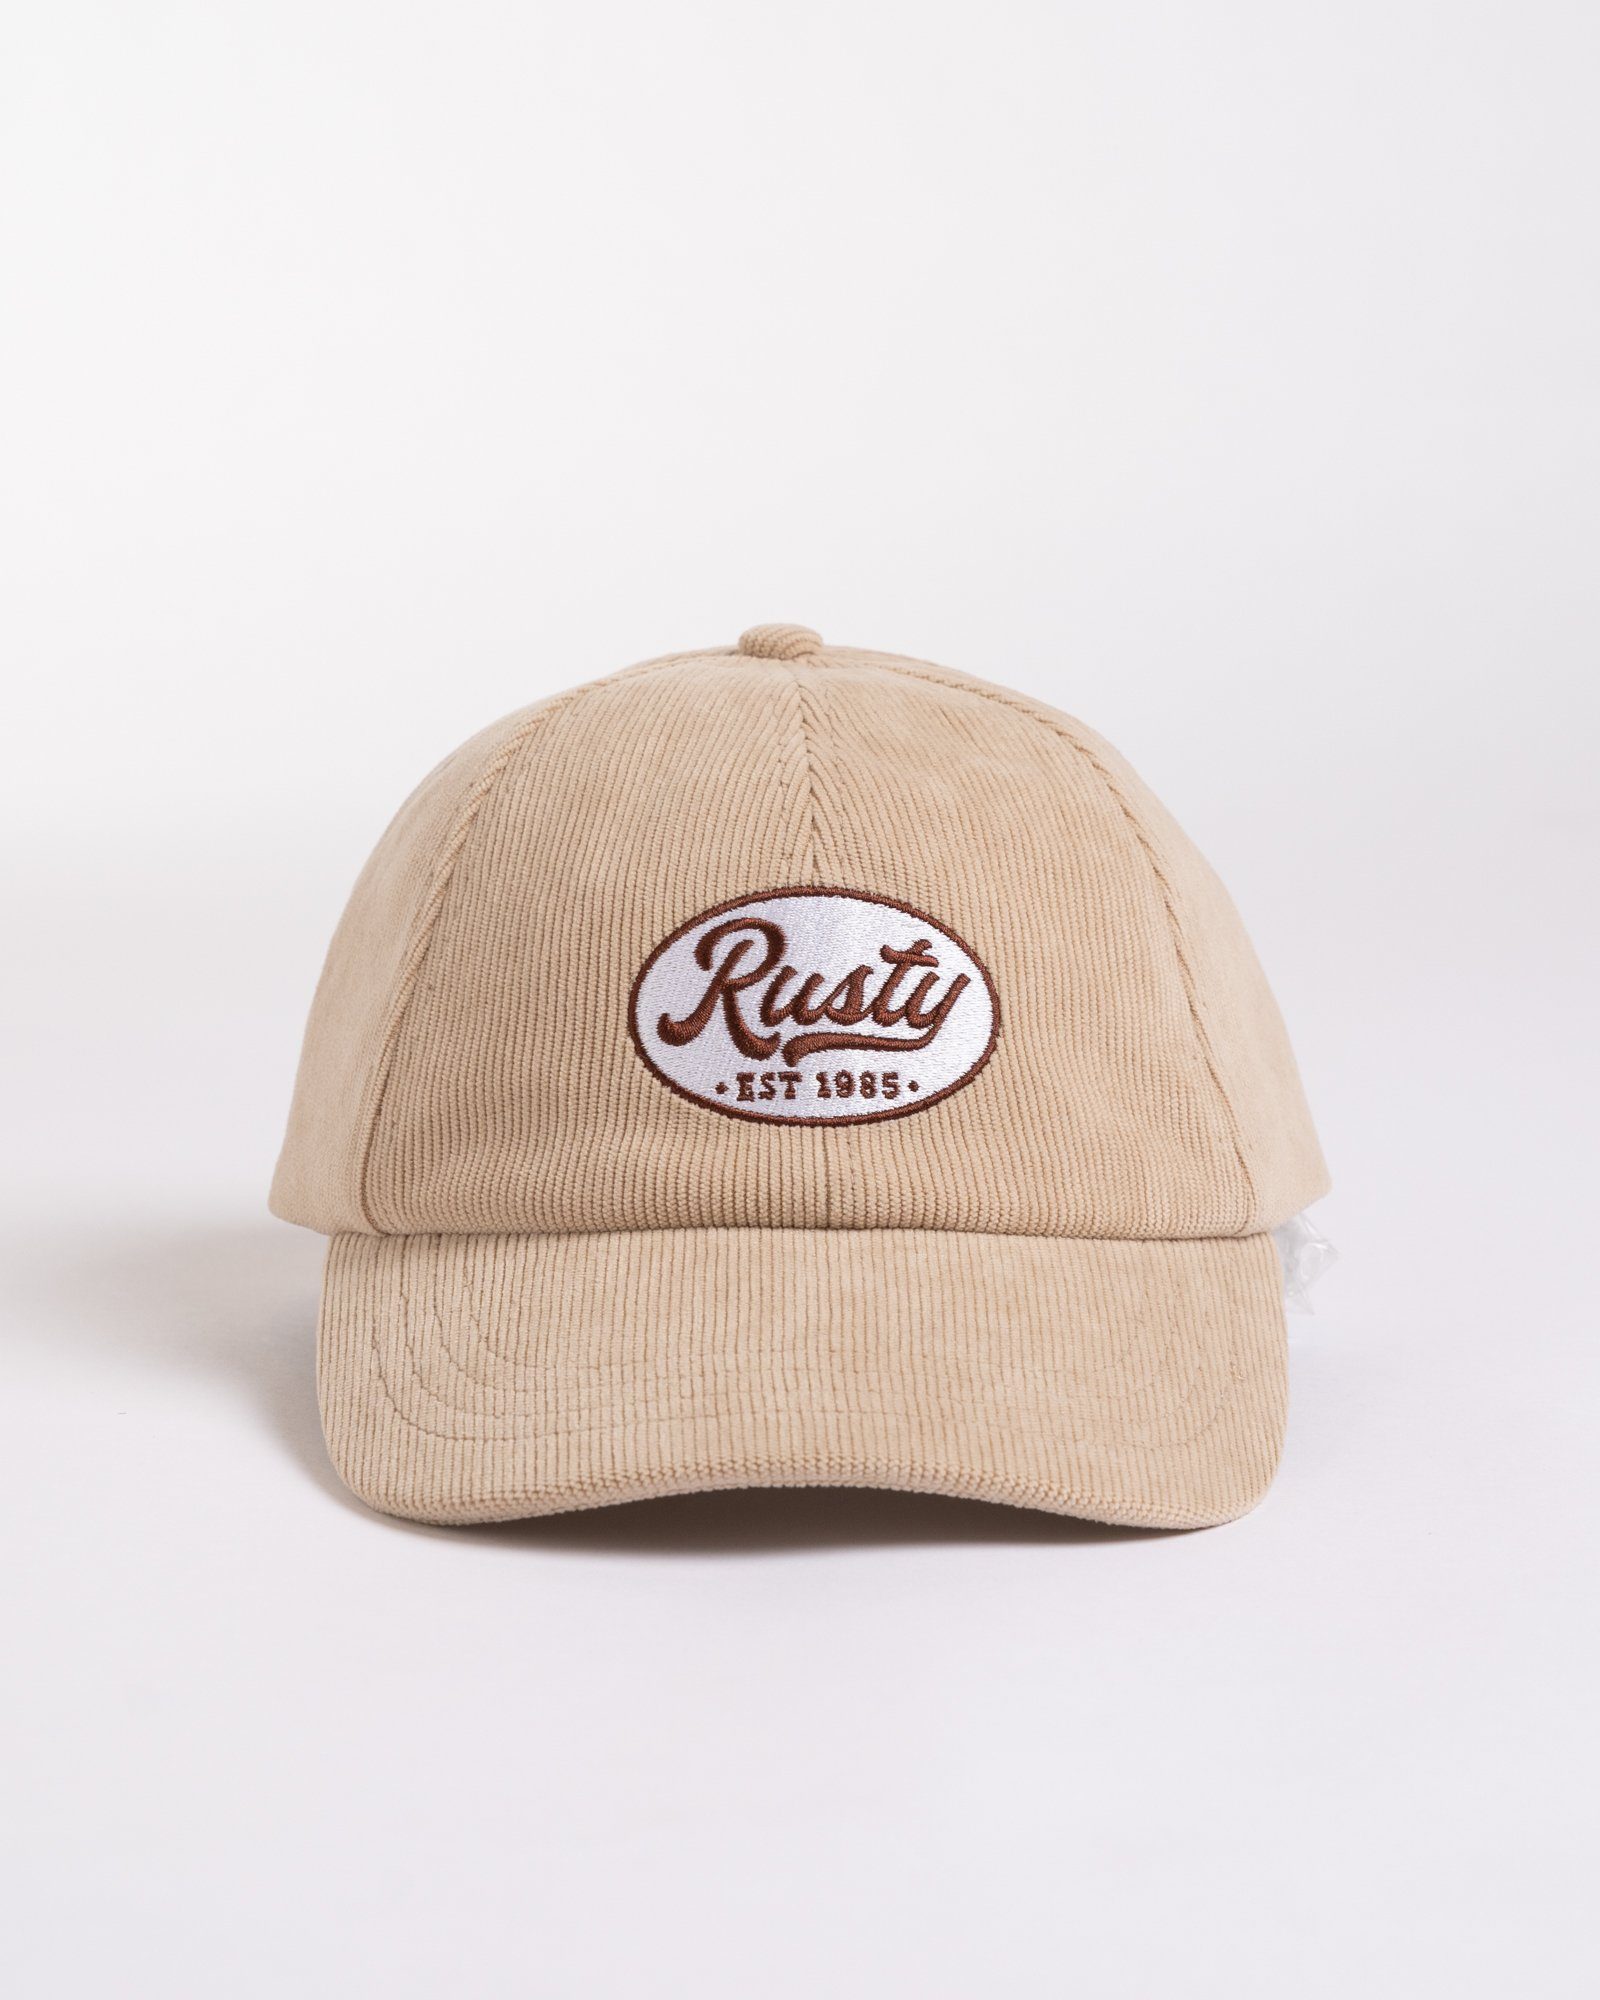 Rusty ADJUSTABLE Baseball VACAY Cap CAP TIME